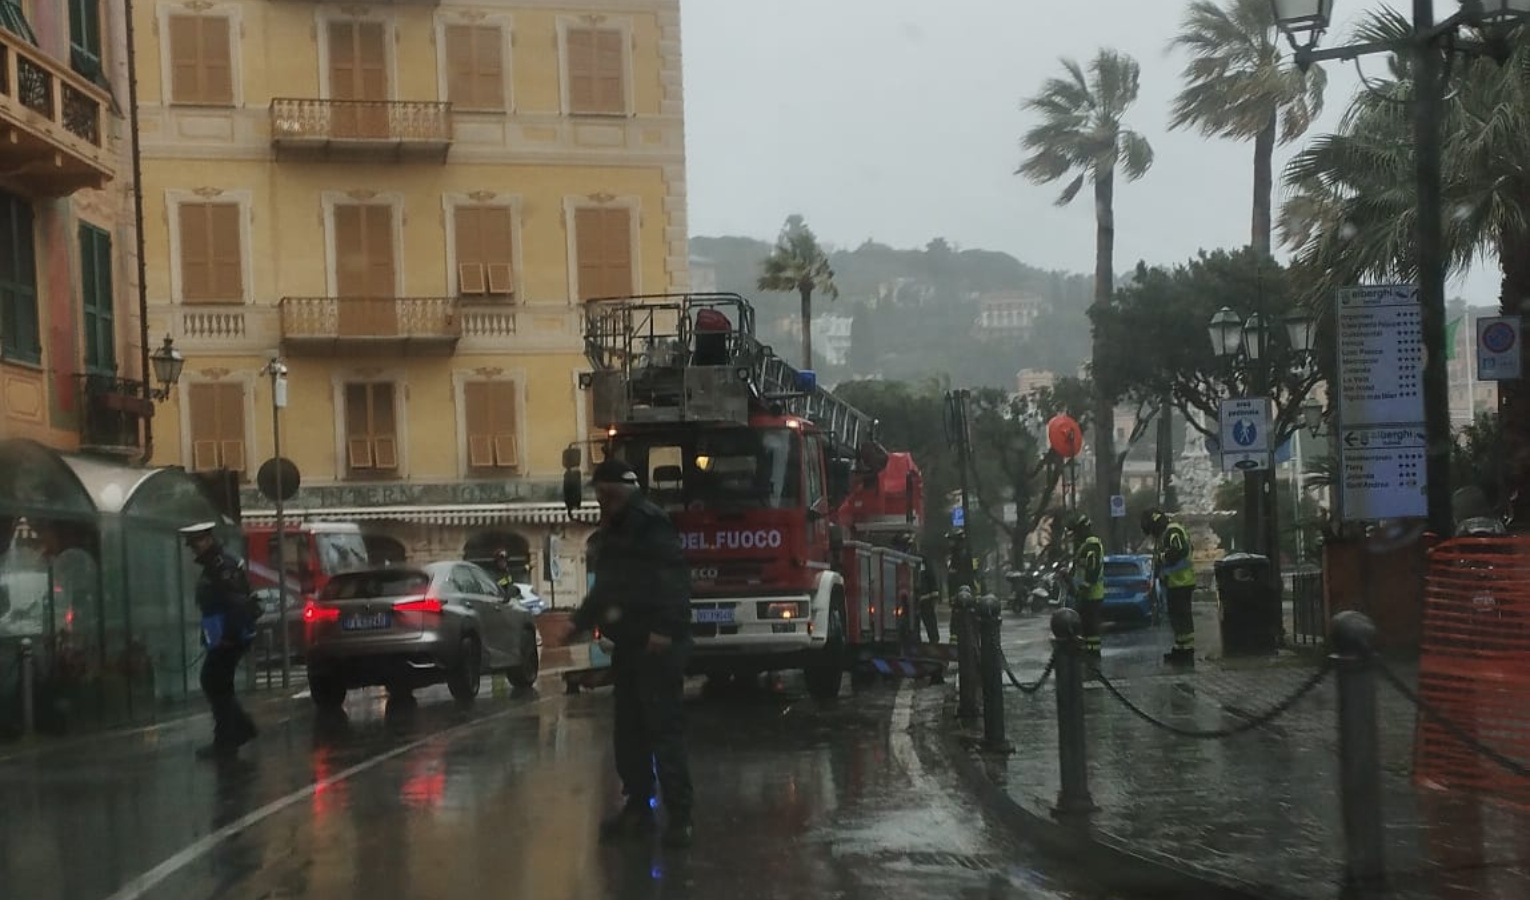 Maltempo in Liguria: mare grosso, vento e allagamenti